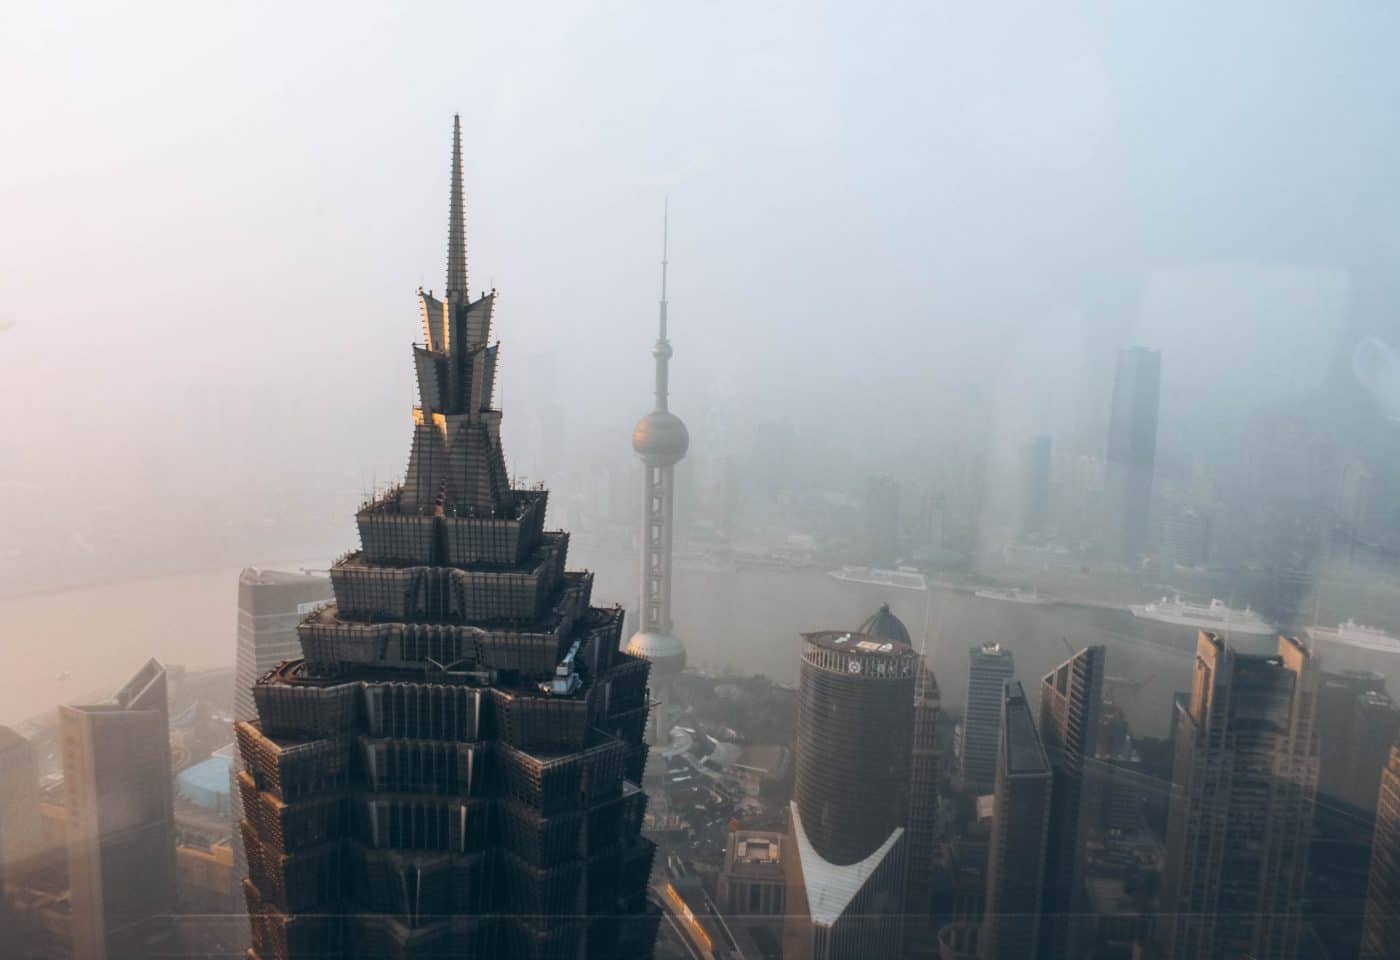 Photographie aérienne de la ville de Shanghai